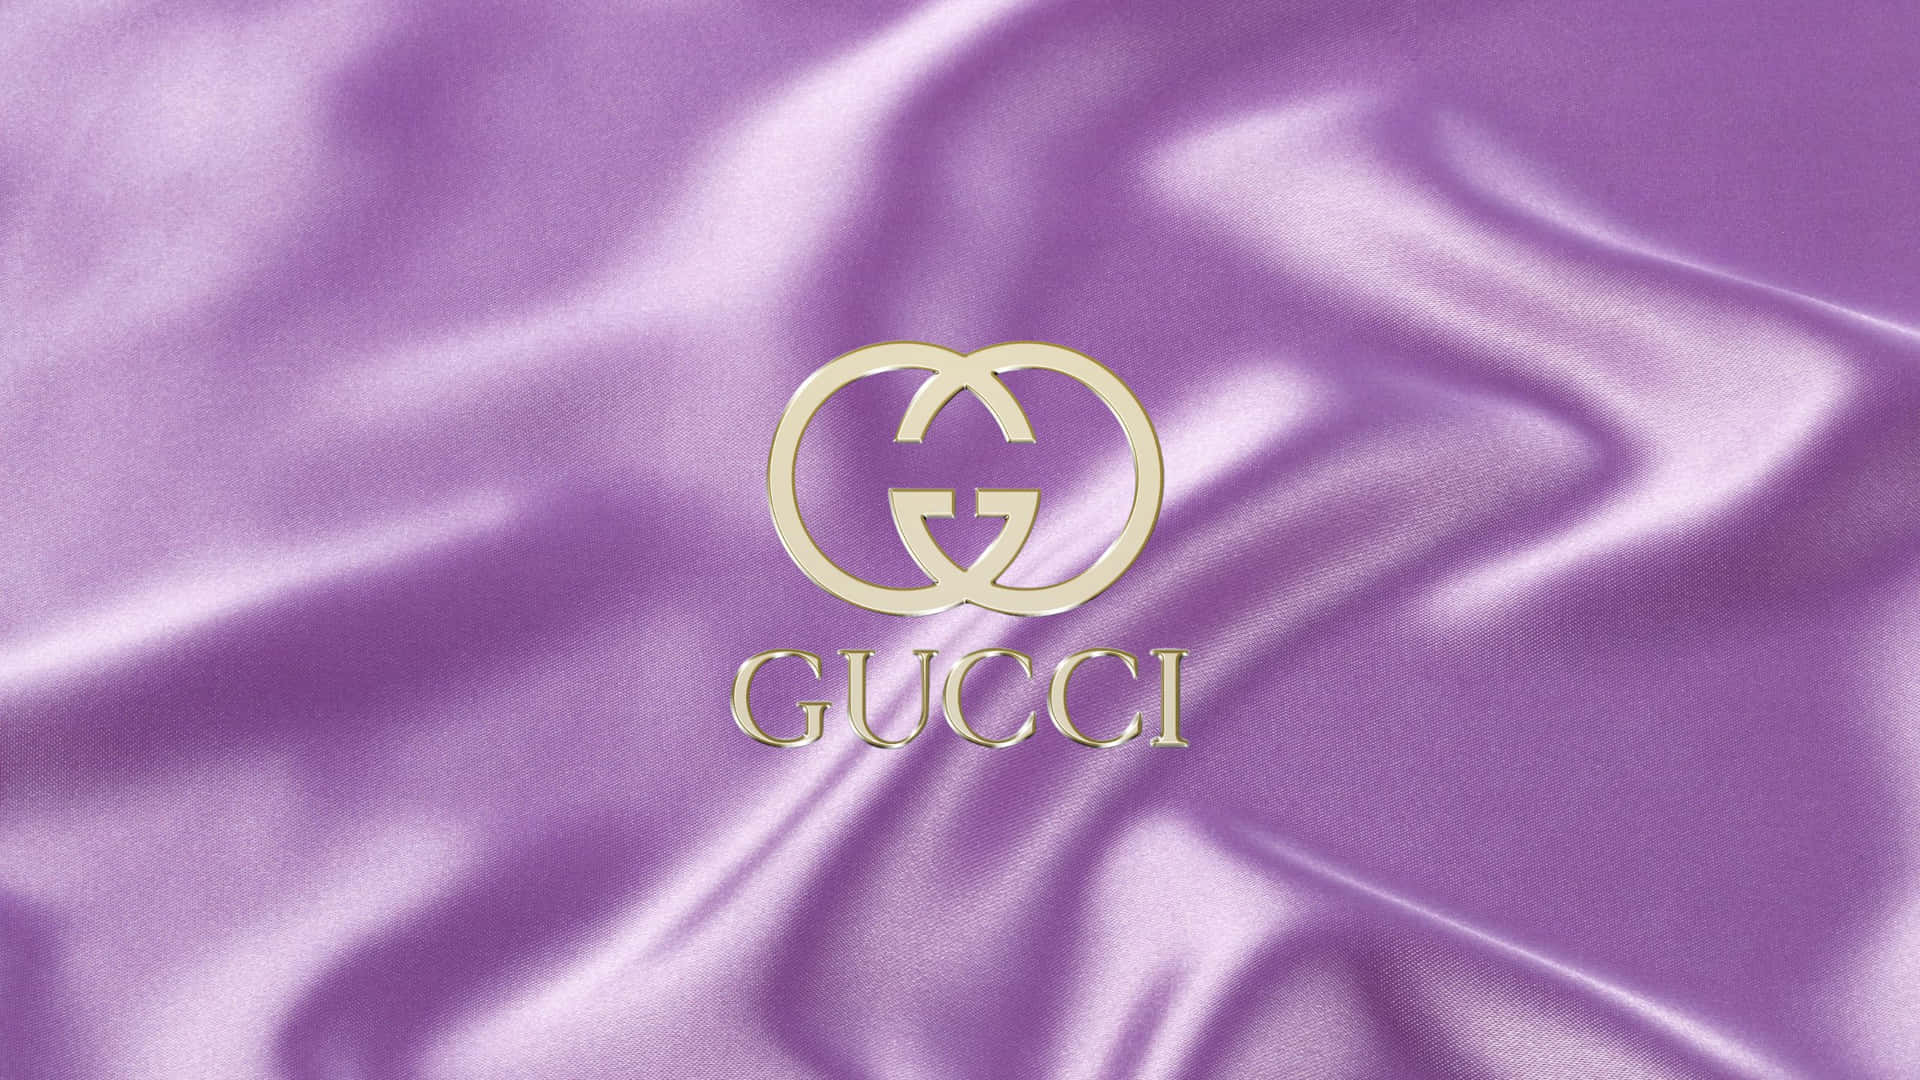 Gucci Purple Backgrounds, một sự lựa chọn đẳng cấp và tinh tế cho những người yêu thích Gucci. Chúng tôi đã tìm kiếm và thu thập những hình ảnh đẹp nhất với màu sắc chủ đạo là tím Gucci. Click để xem ngay hình nền độc đáo và sang trọng của Gucci Purple!